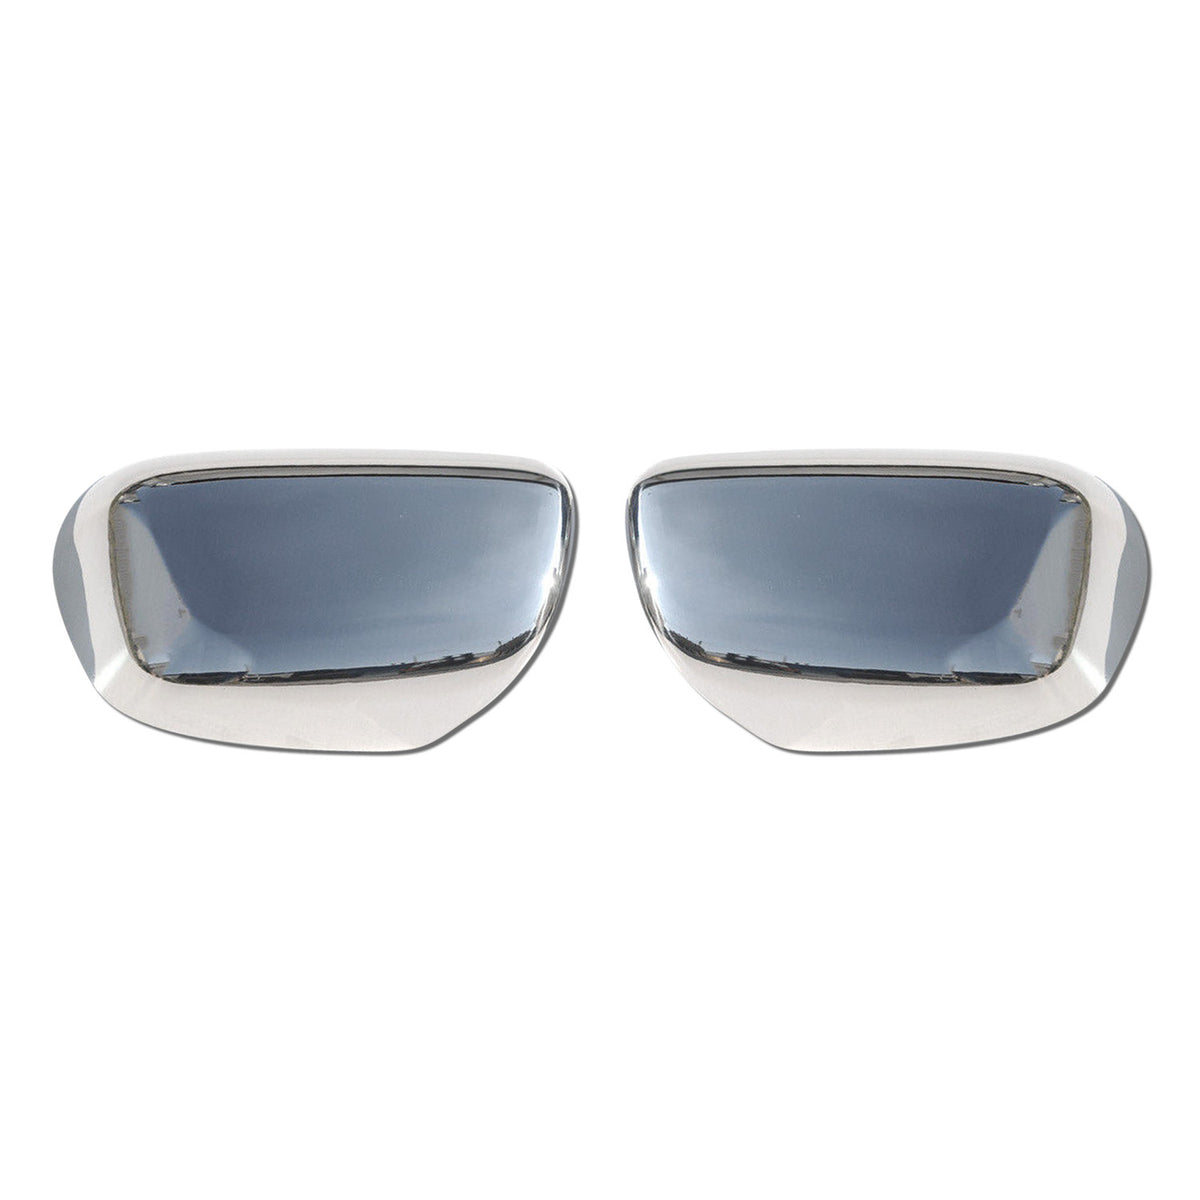 Spiegelkappen Spiegelabdeckung für Toyota Fortuner 2005-2015 Edelstahl Silber